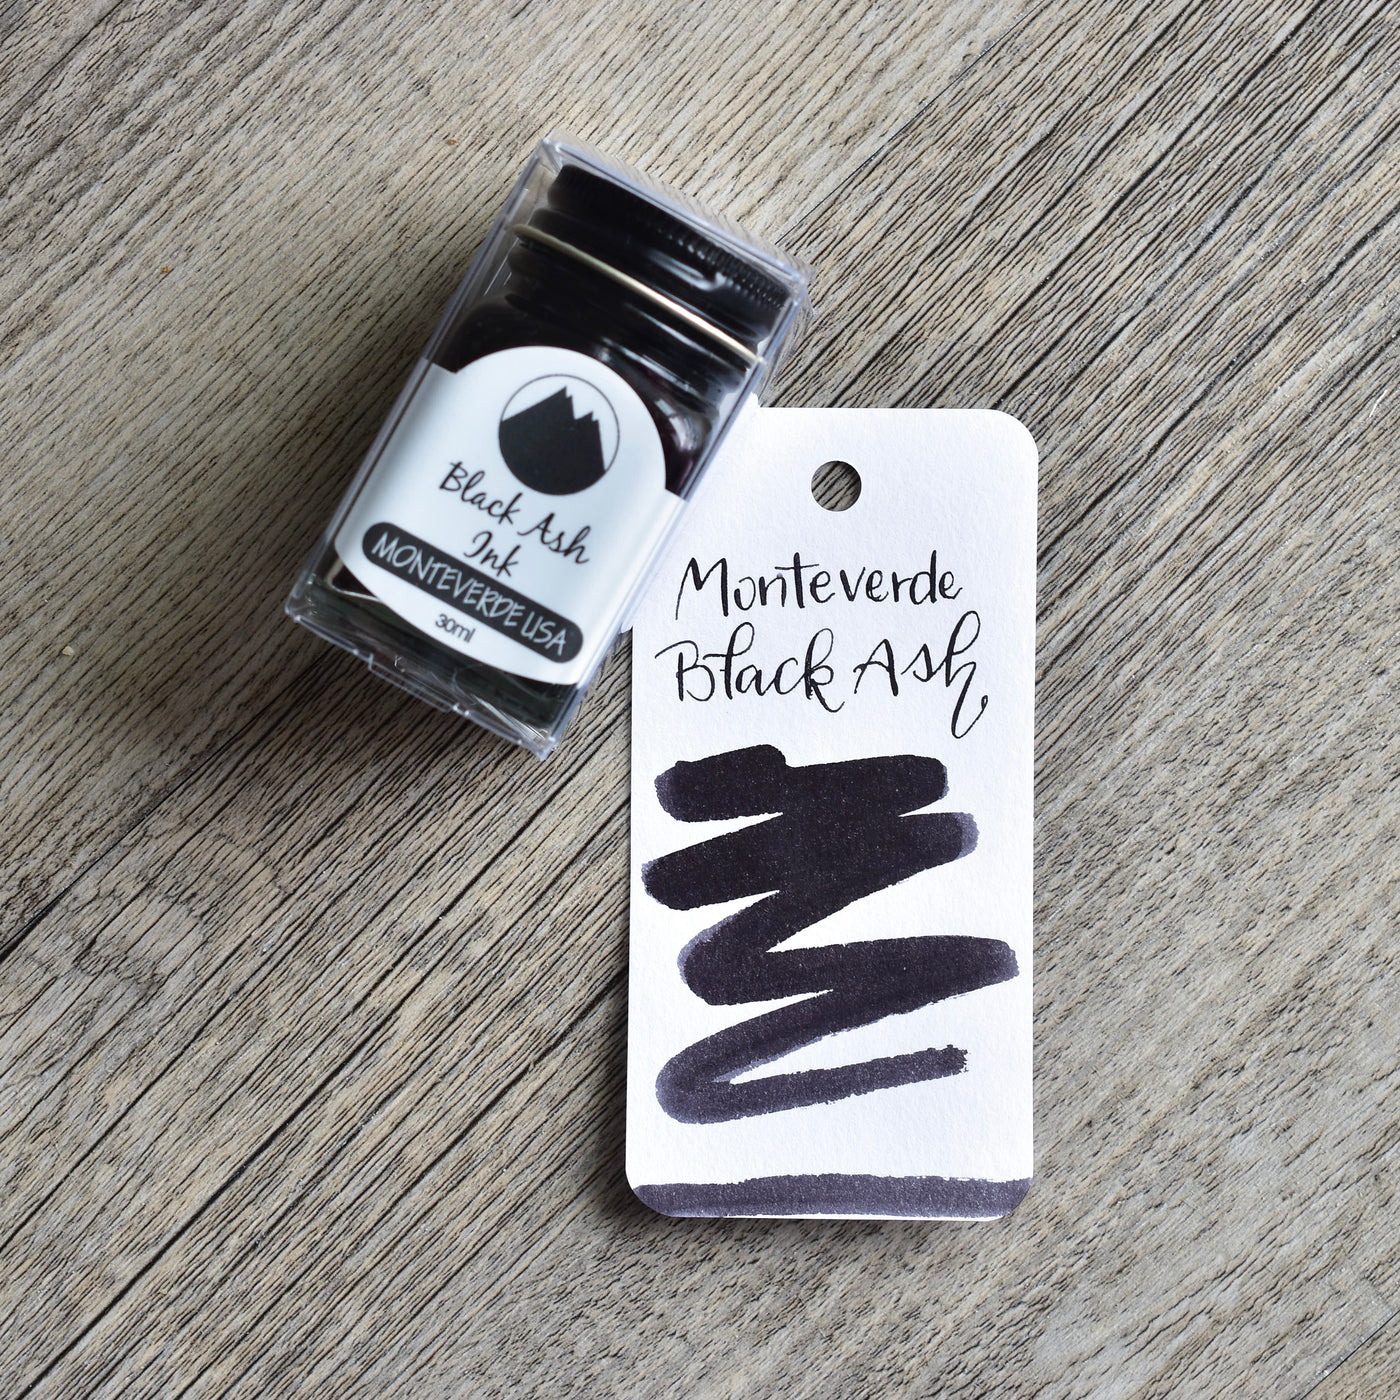 Monteverde Black Ash Ink Bottle